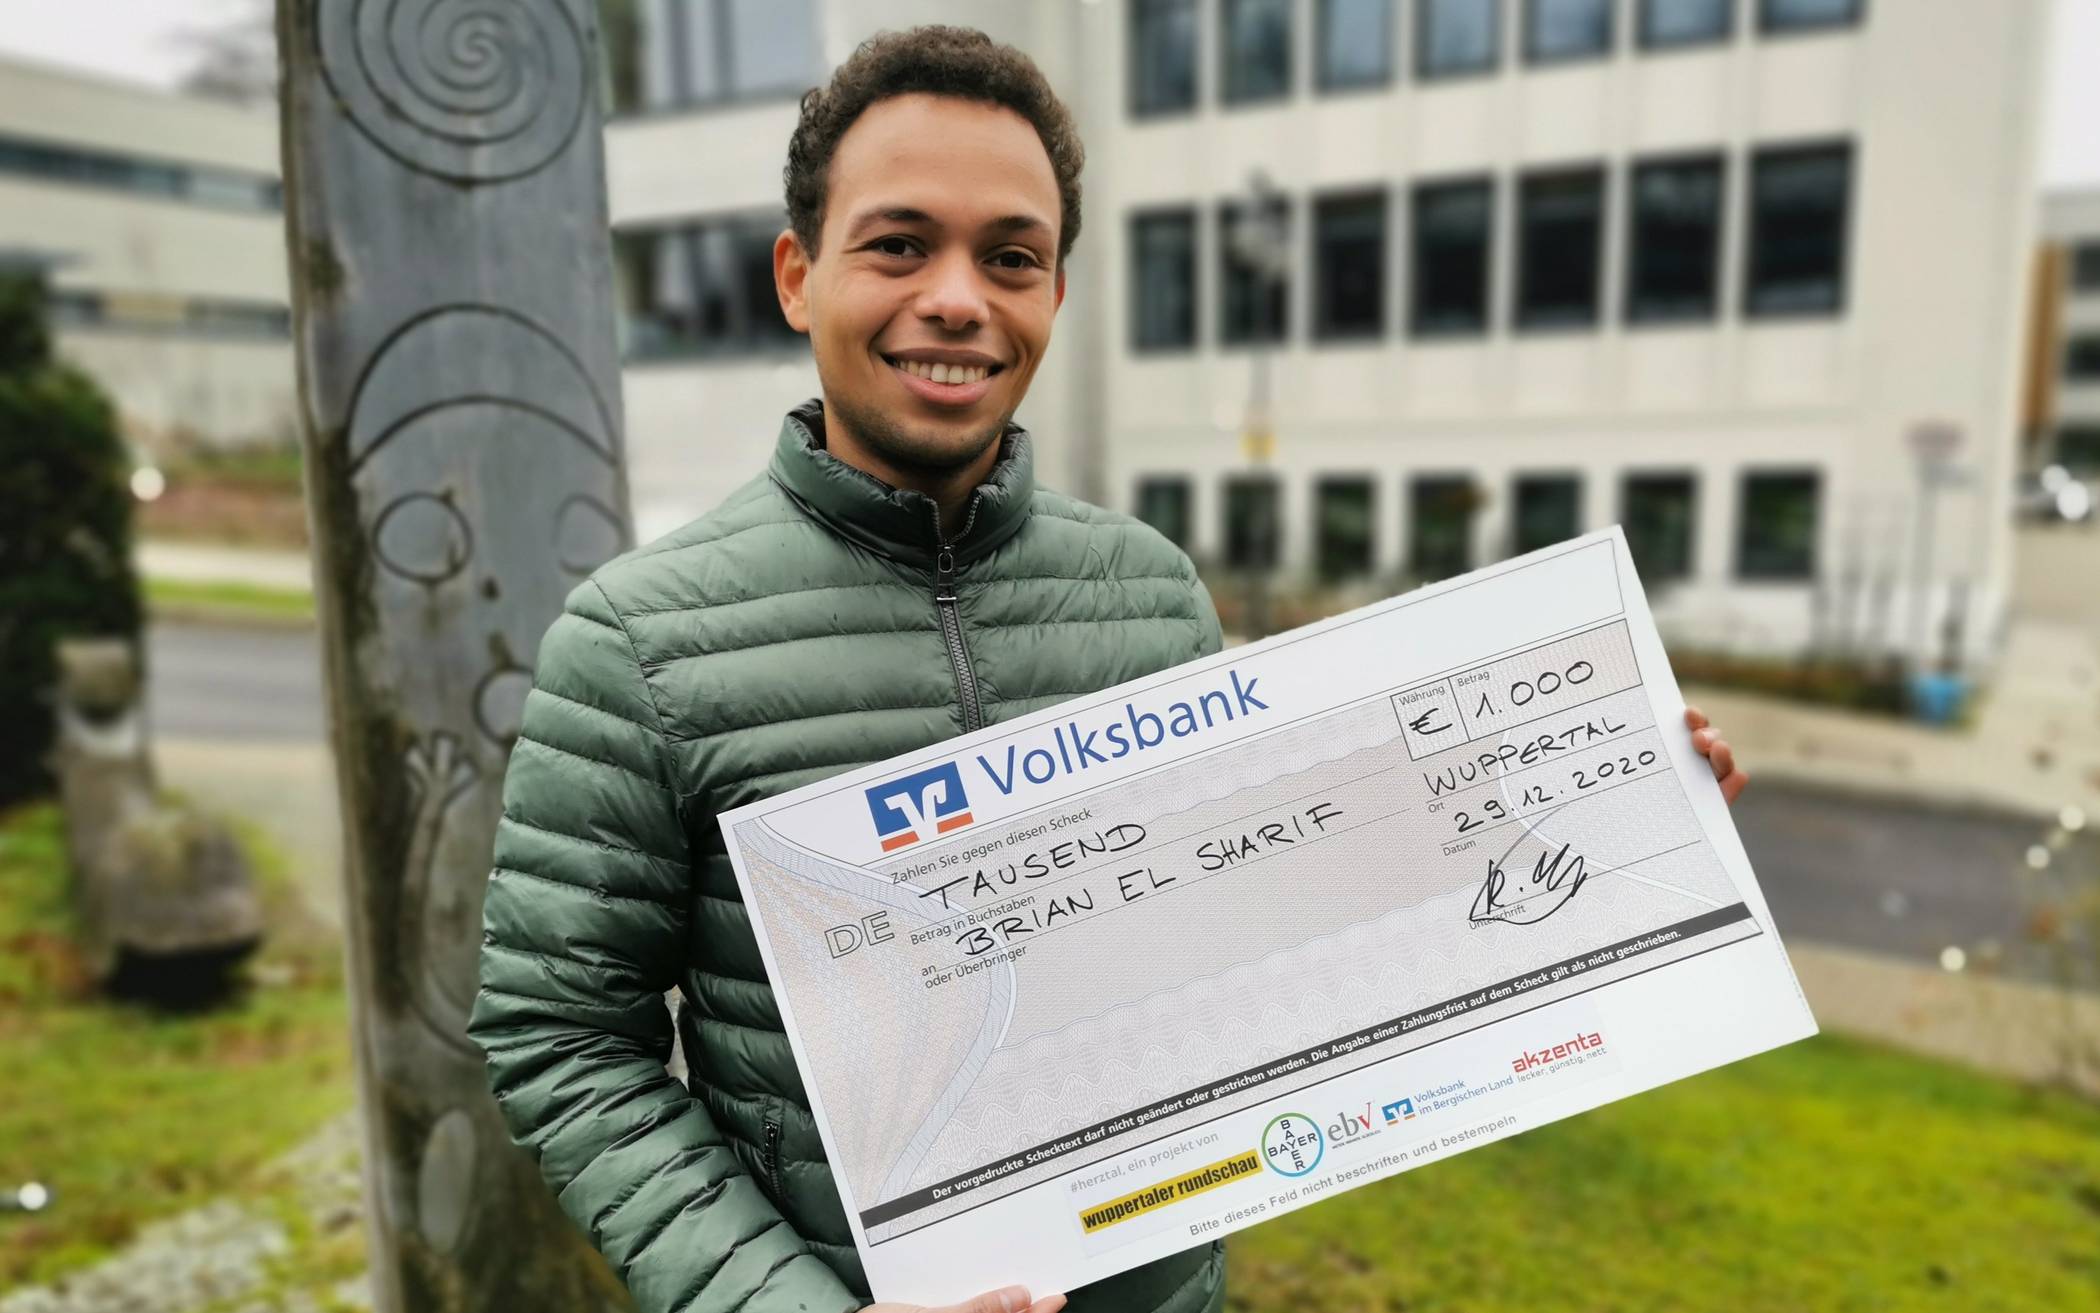  Brian El Sharif führte an eher unbekannte Ecken in Wuppertal und sicherte sich mit seinem Insta-Take-Over ein Preisgeld von 1.000 Euro. 